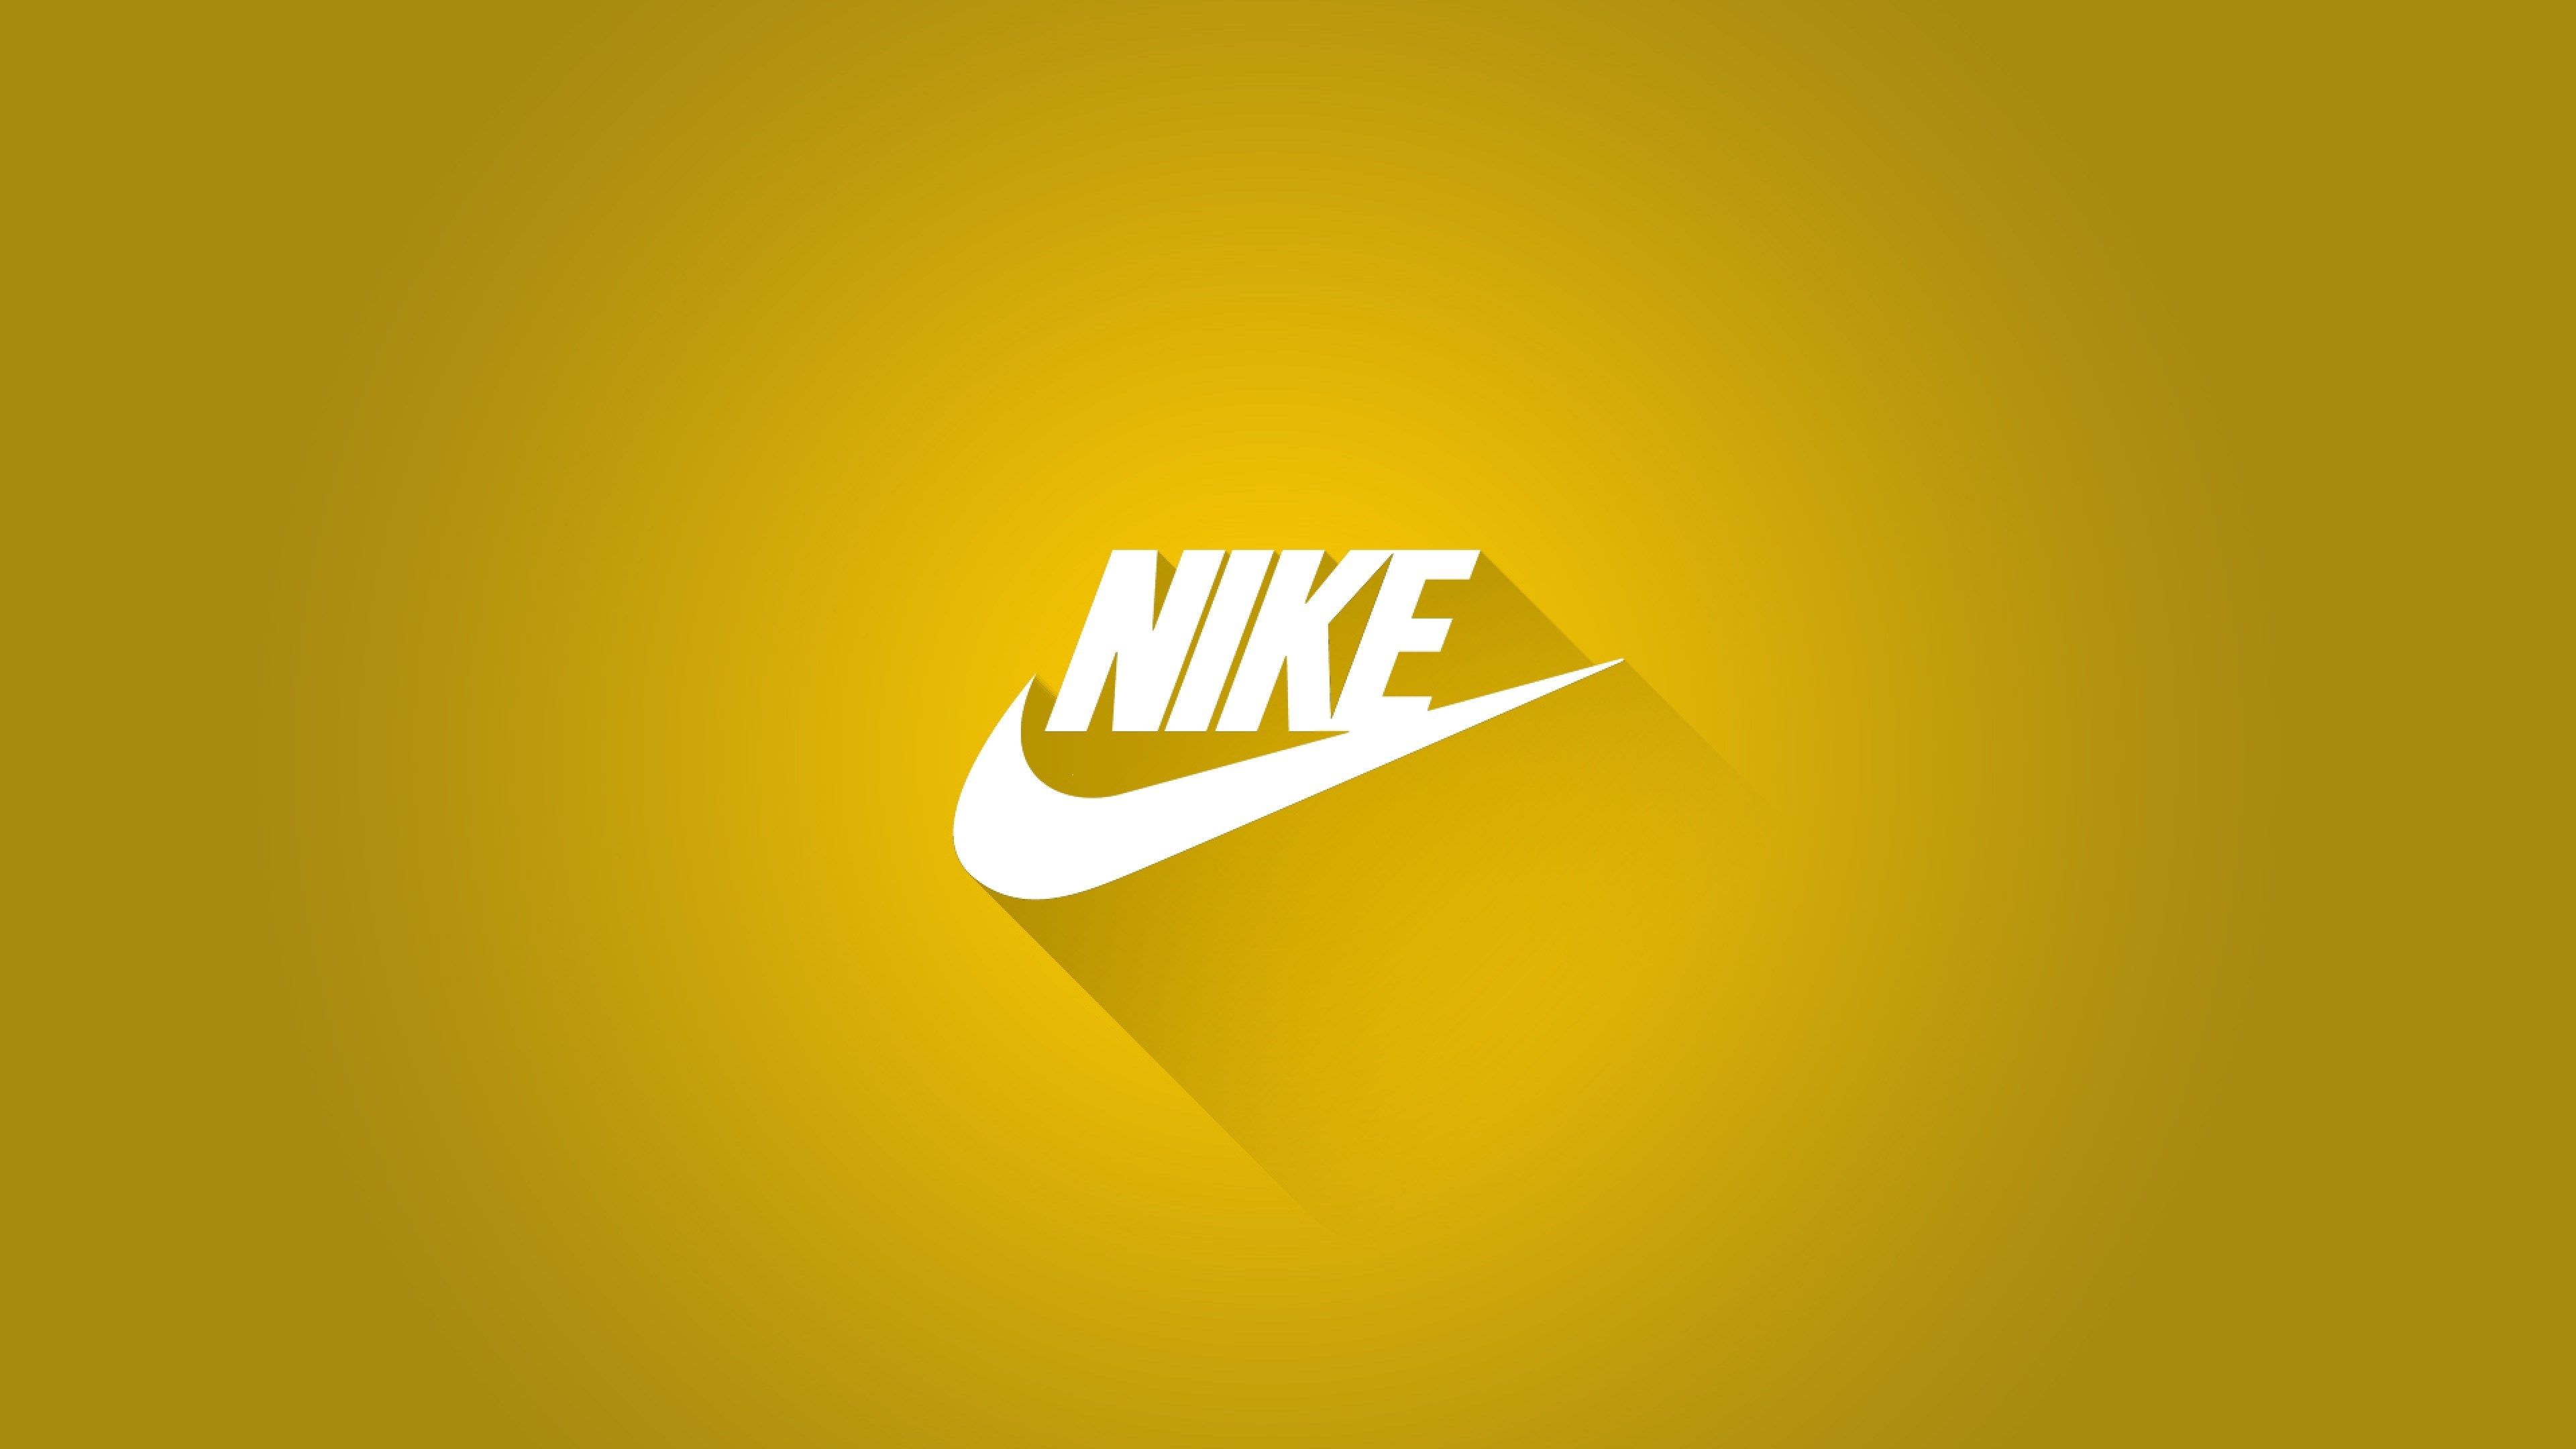 Hình nền Nike 4k: Bạn muốn sở hữu một hình nền đẹp, chất lượng cao và sắc nét? Hình nền Nike 4k chính là giải pháp hoàn hảo cho bạn. Với độ phân giải cao và màu sắc sống động, hình nền này chắc chắn sẽ làm hài lòng mọi người.